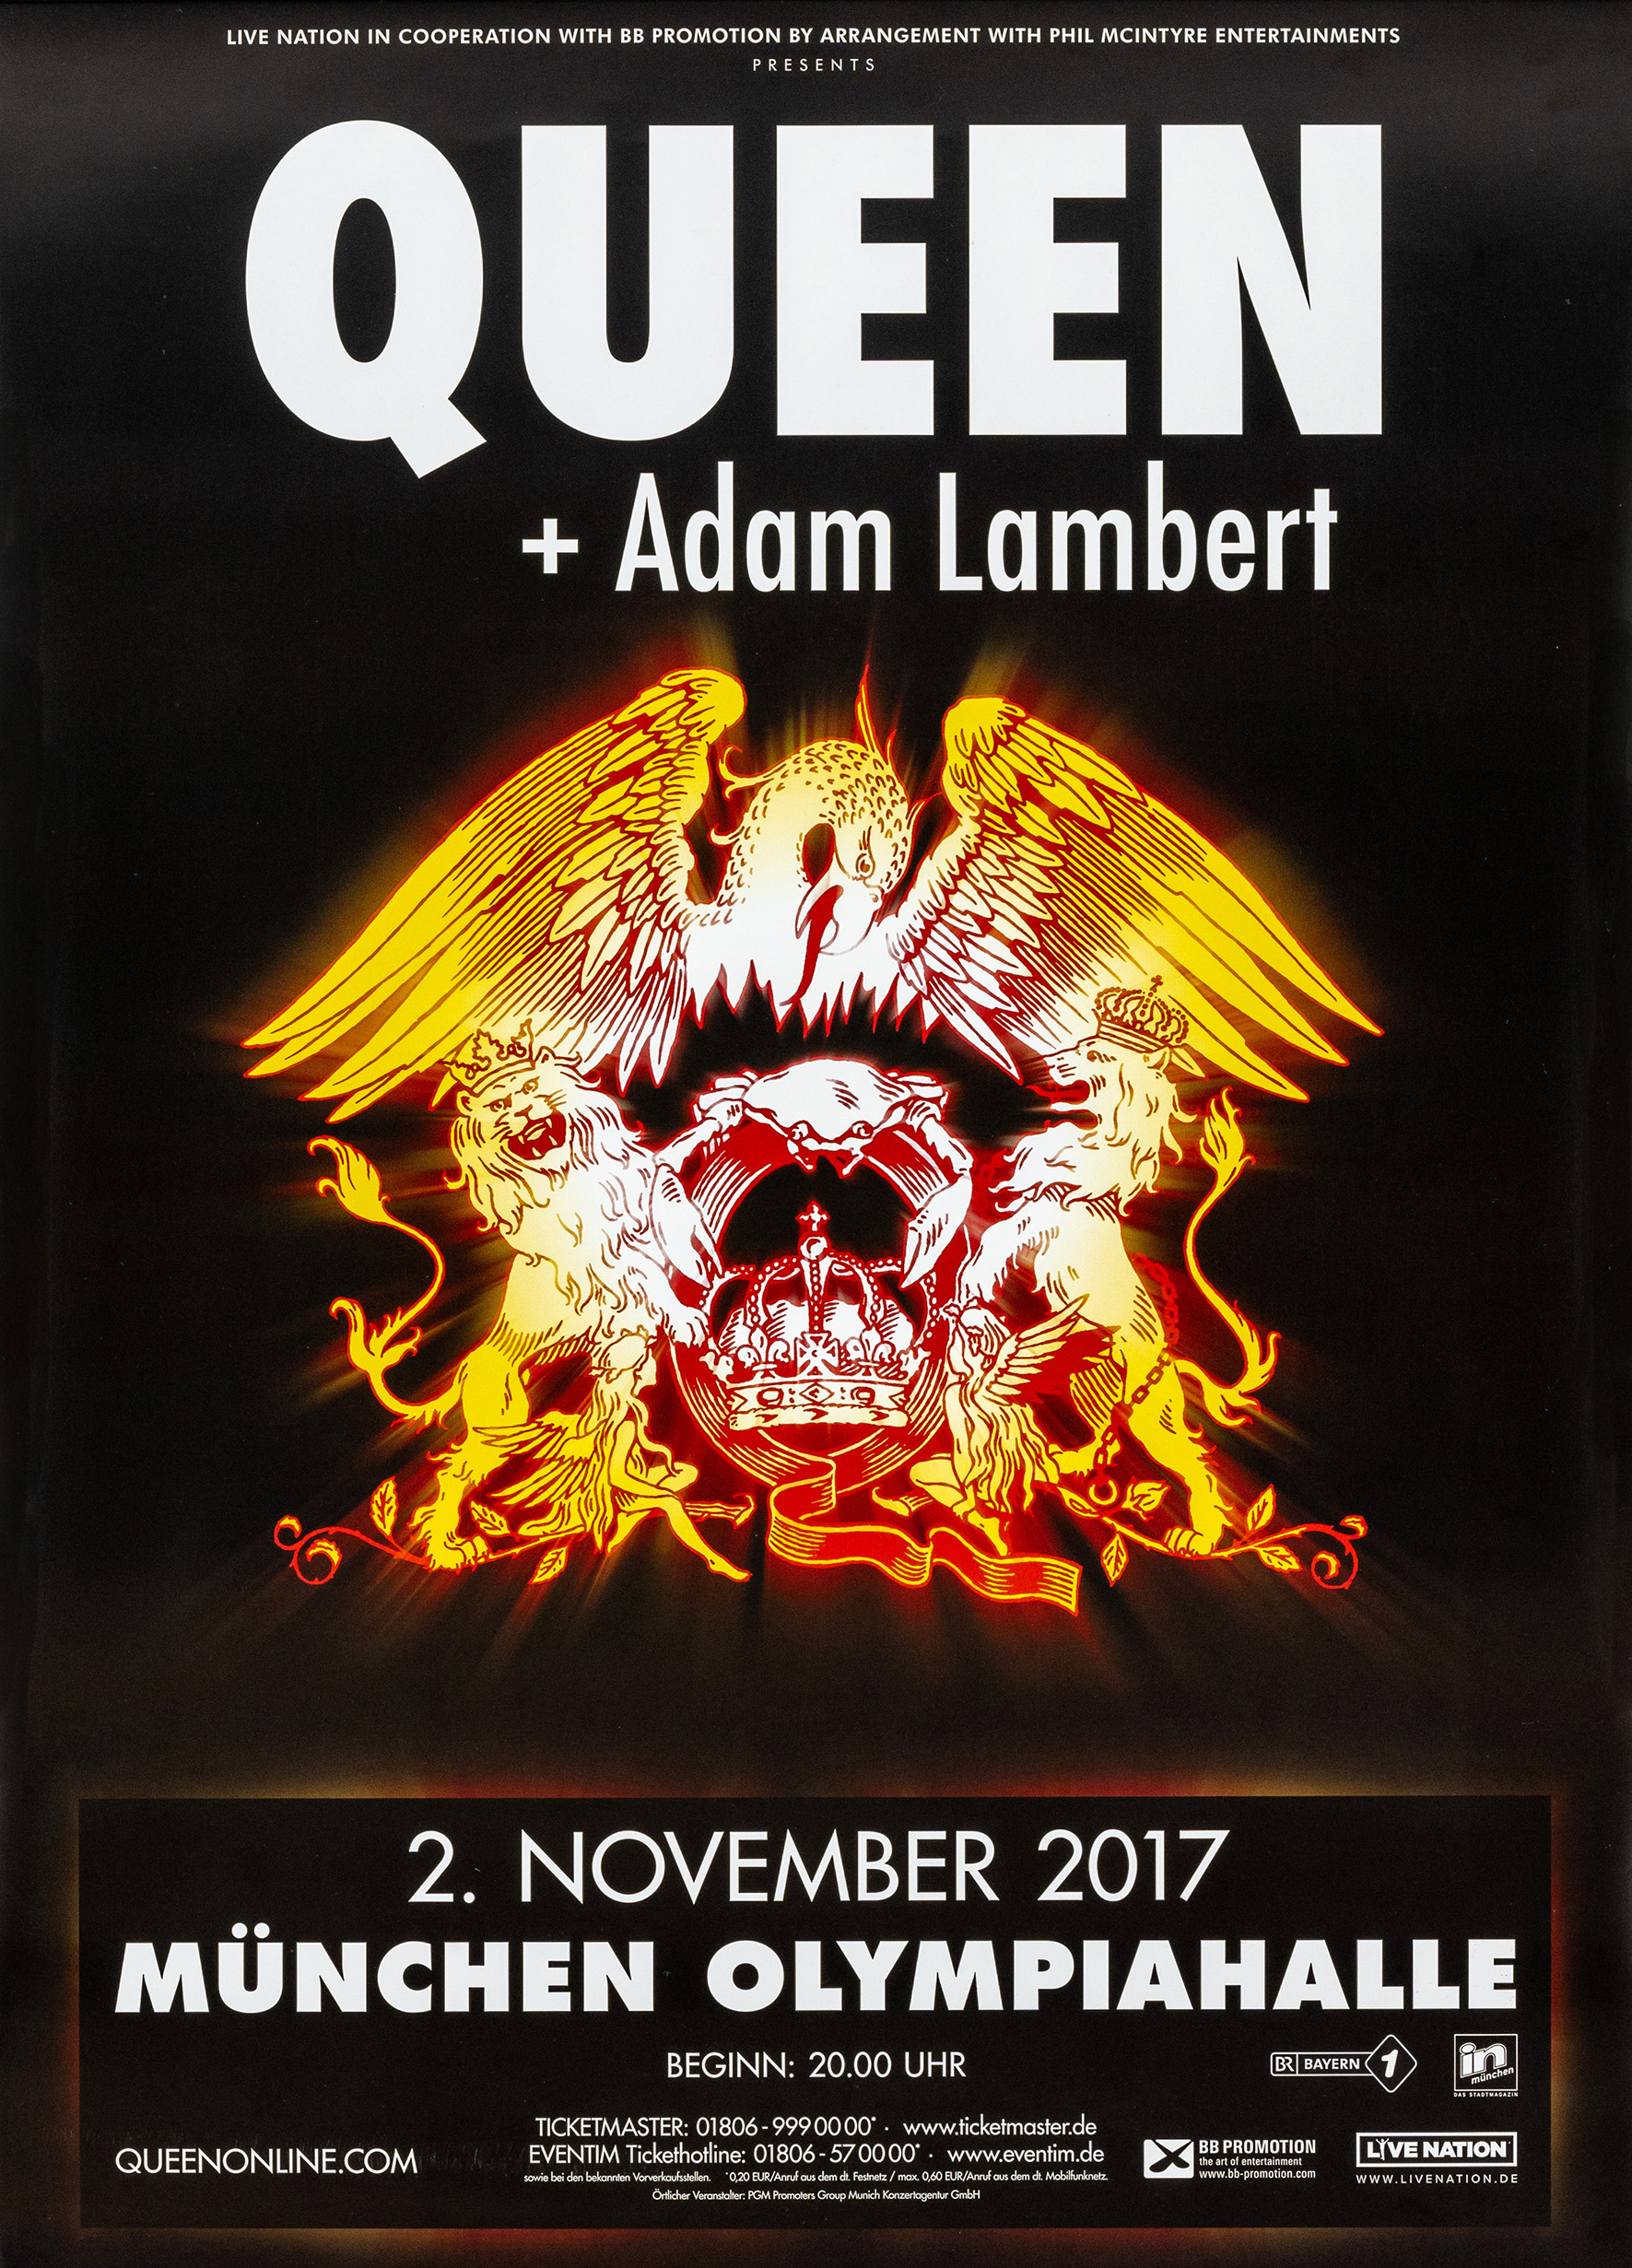 Queen + Adam Lambert in Munich on 02.11.2017